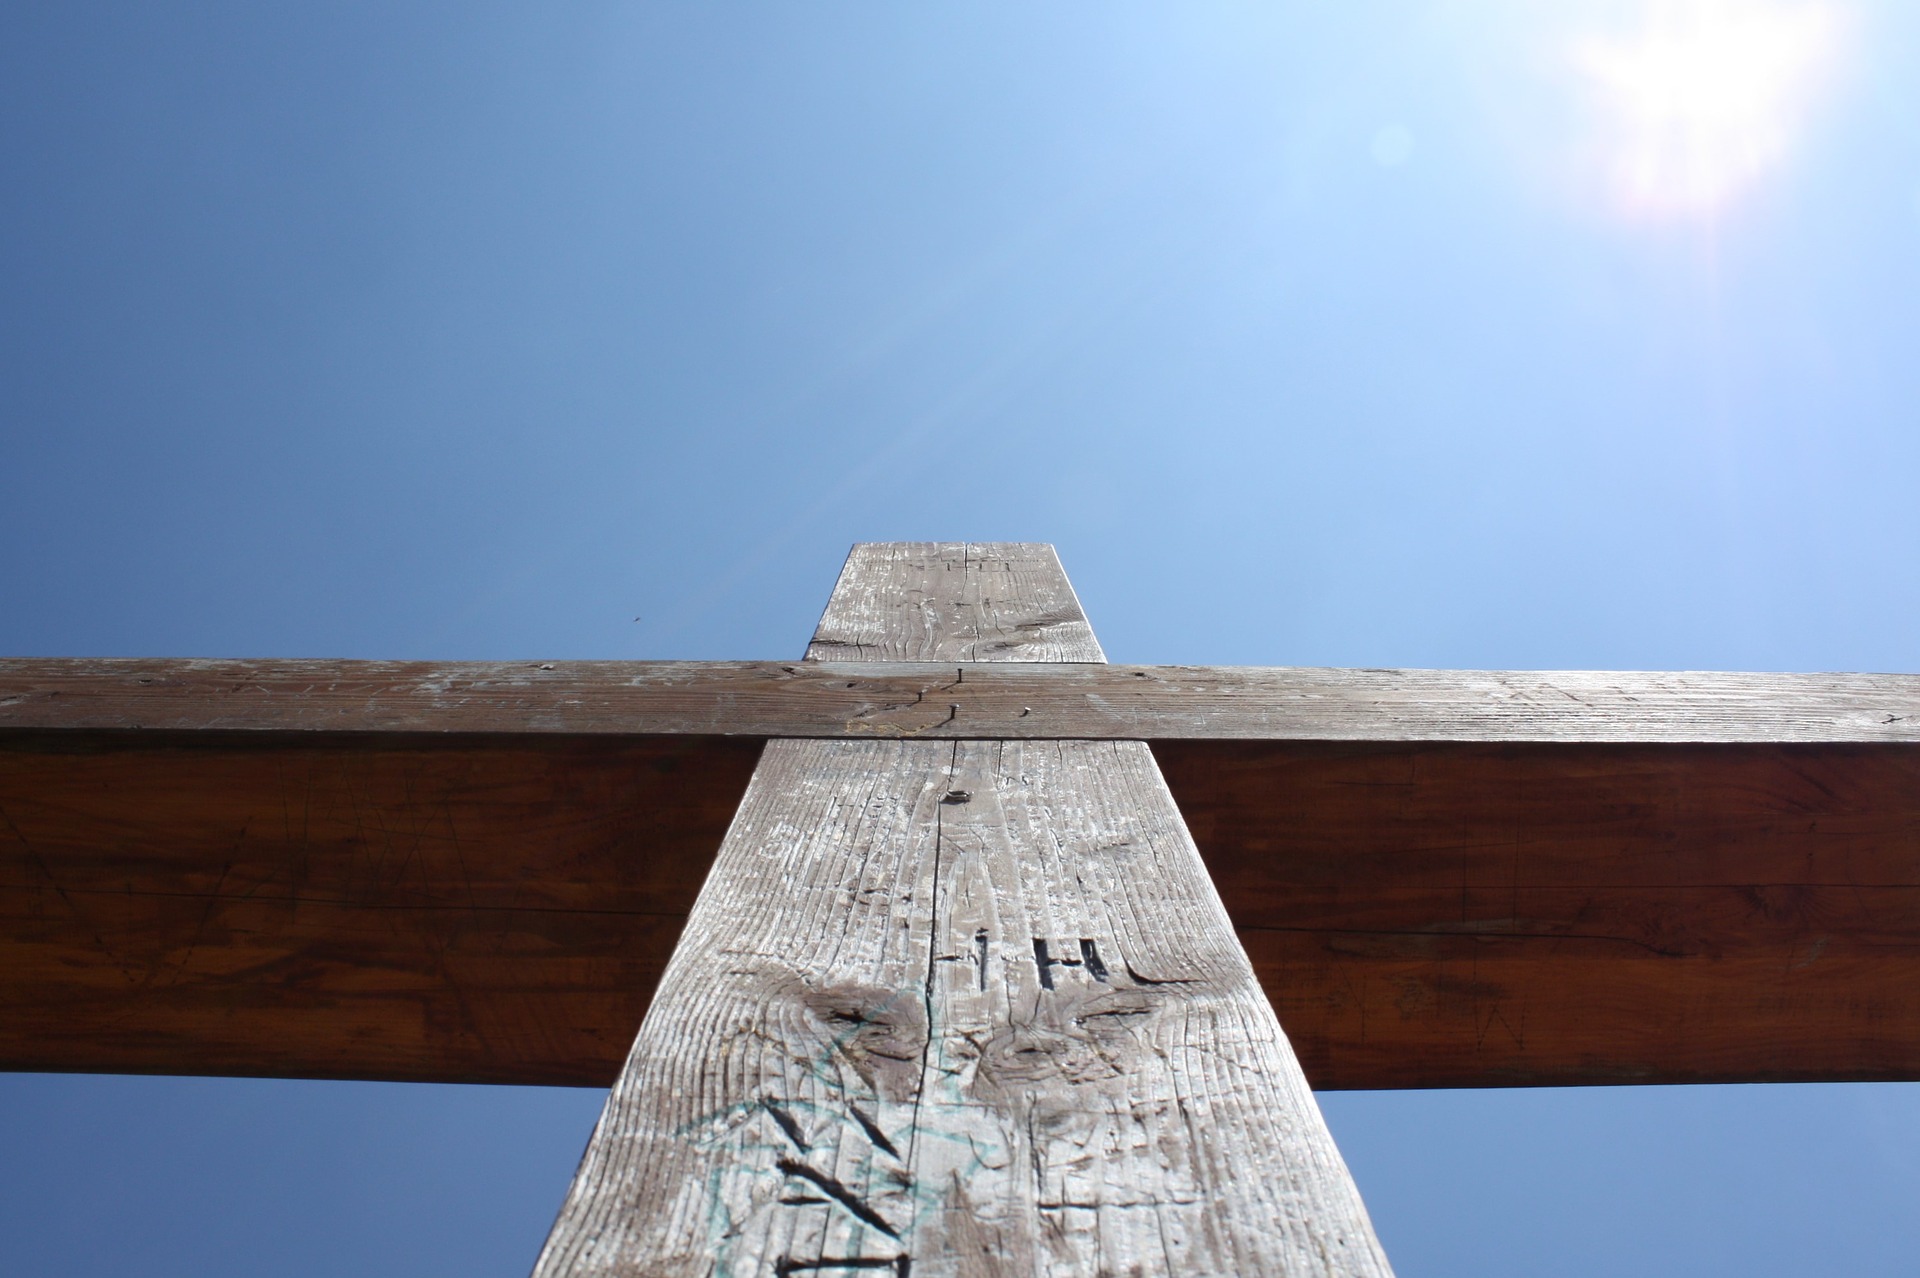 Kreuz (c) Bild von Dennis Gries auf Pixabay